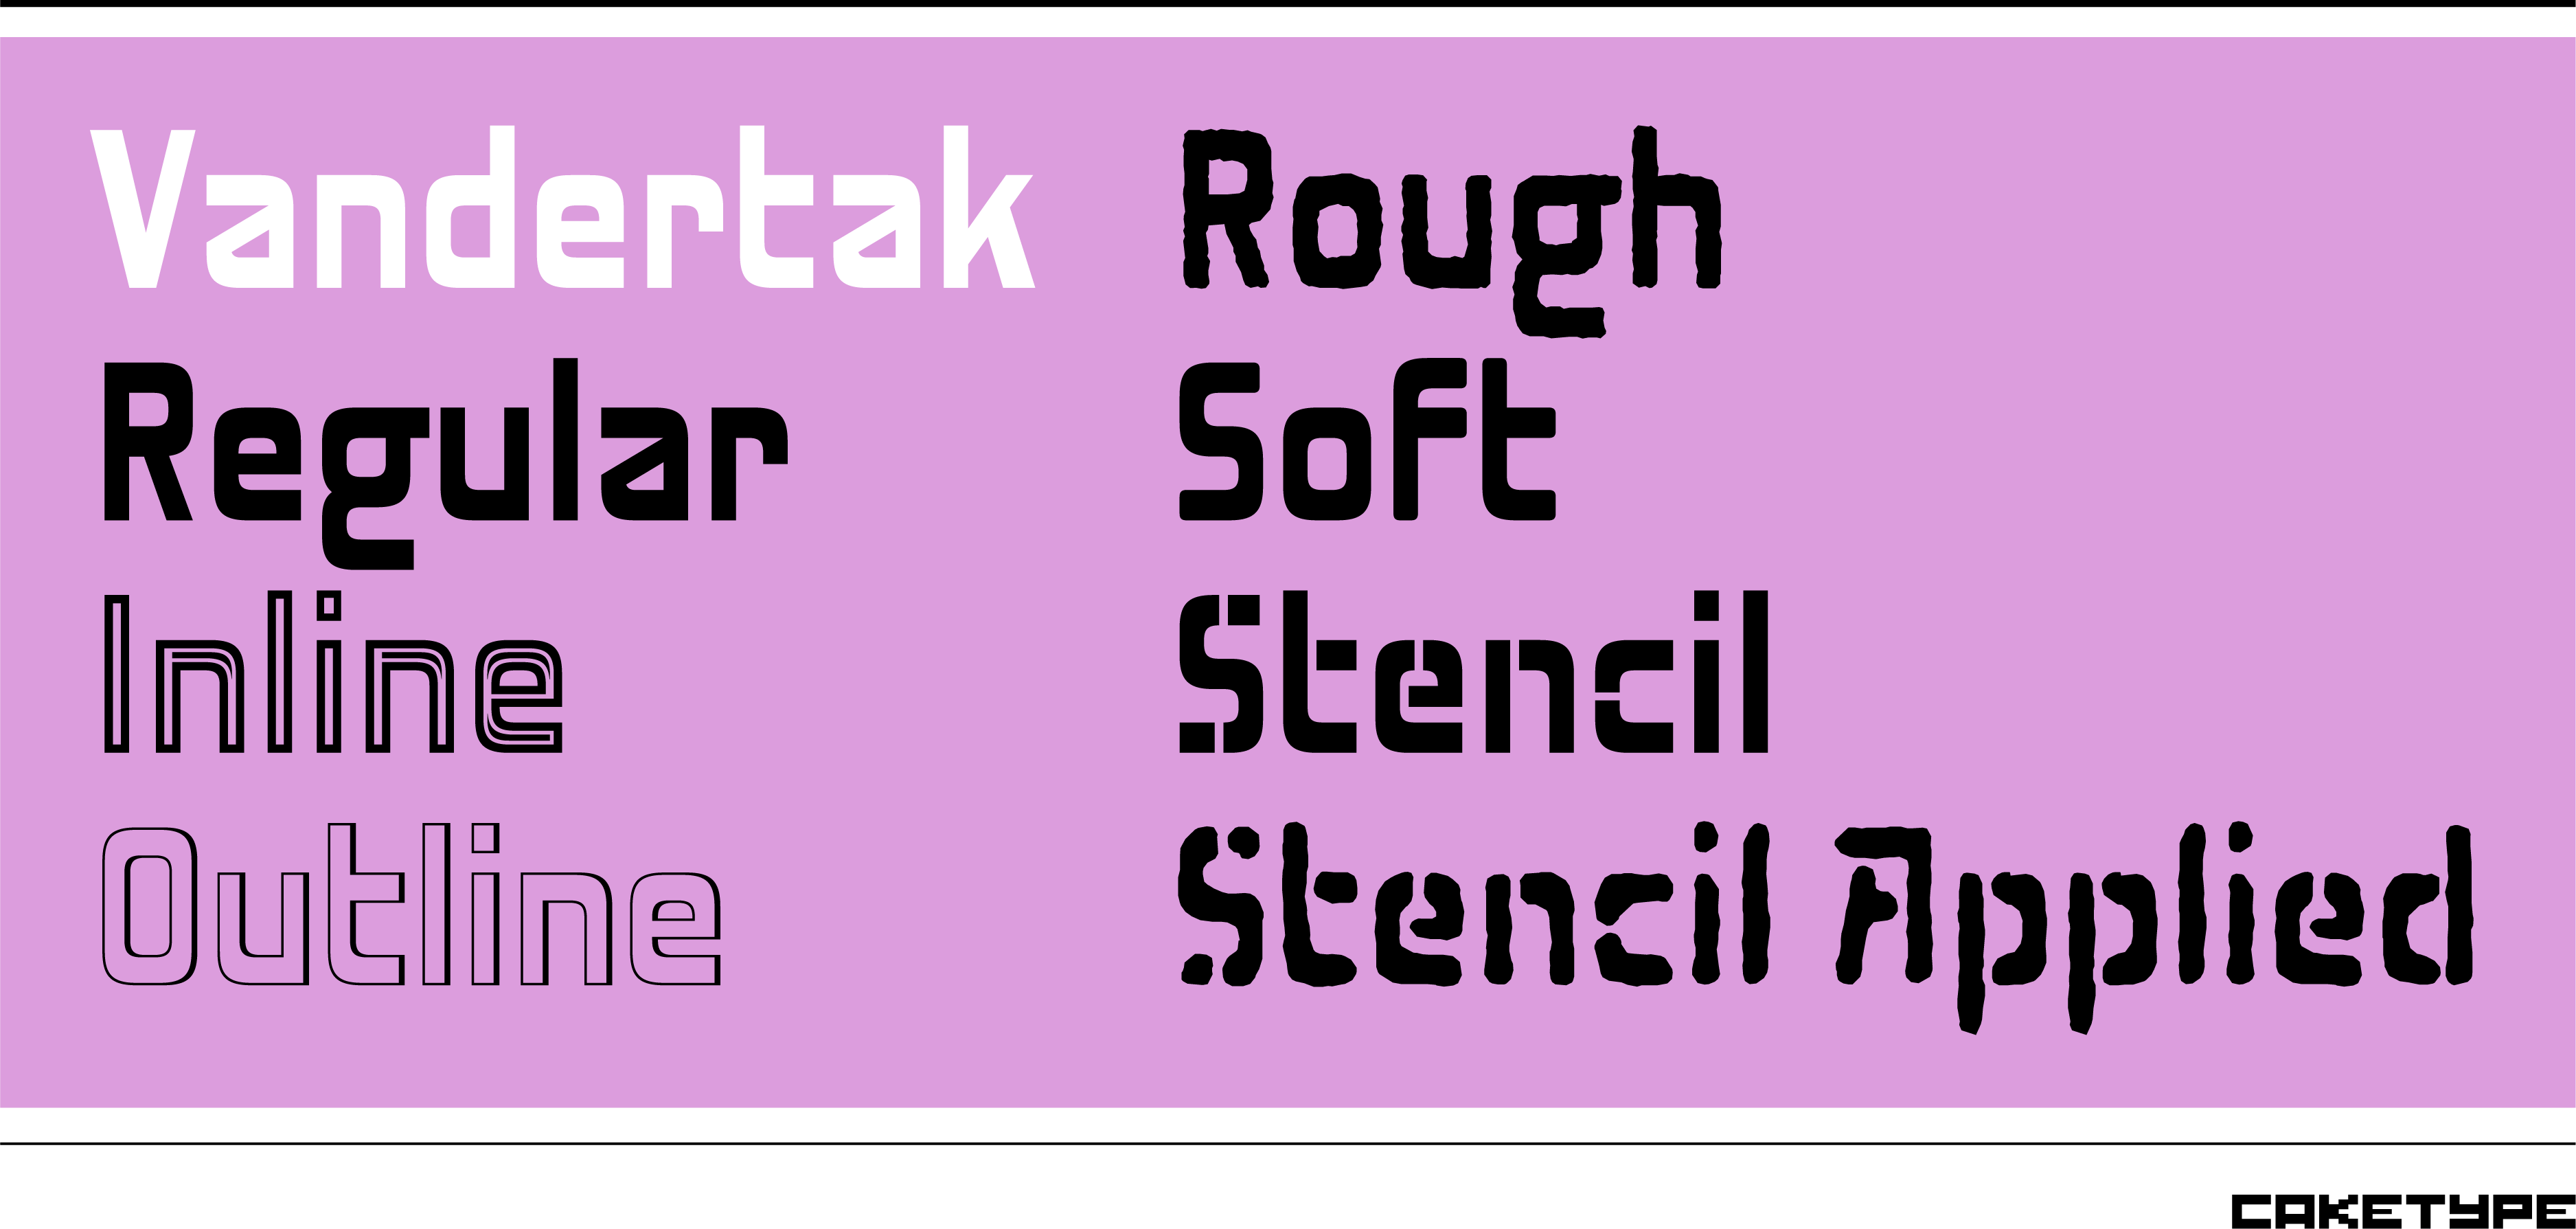 Card displaying Vandertak typeface in various styles